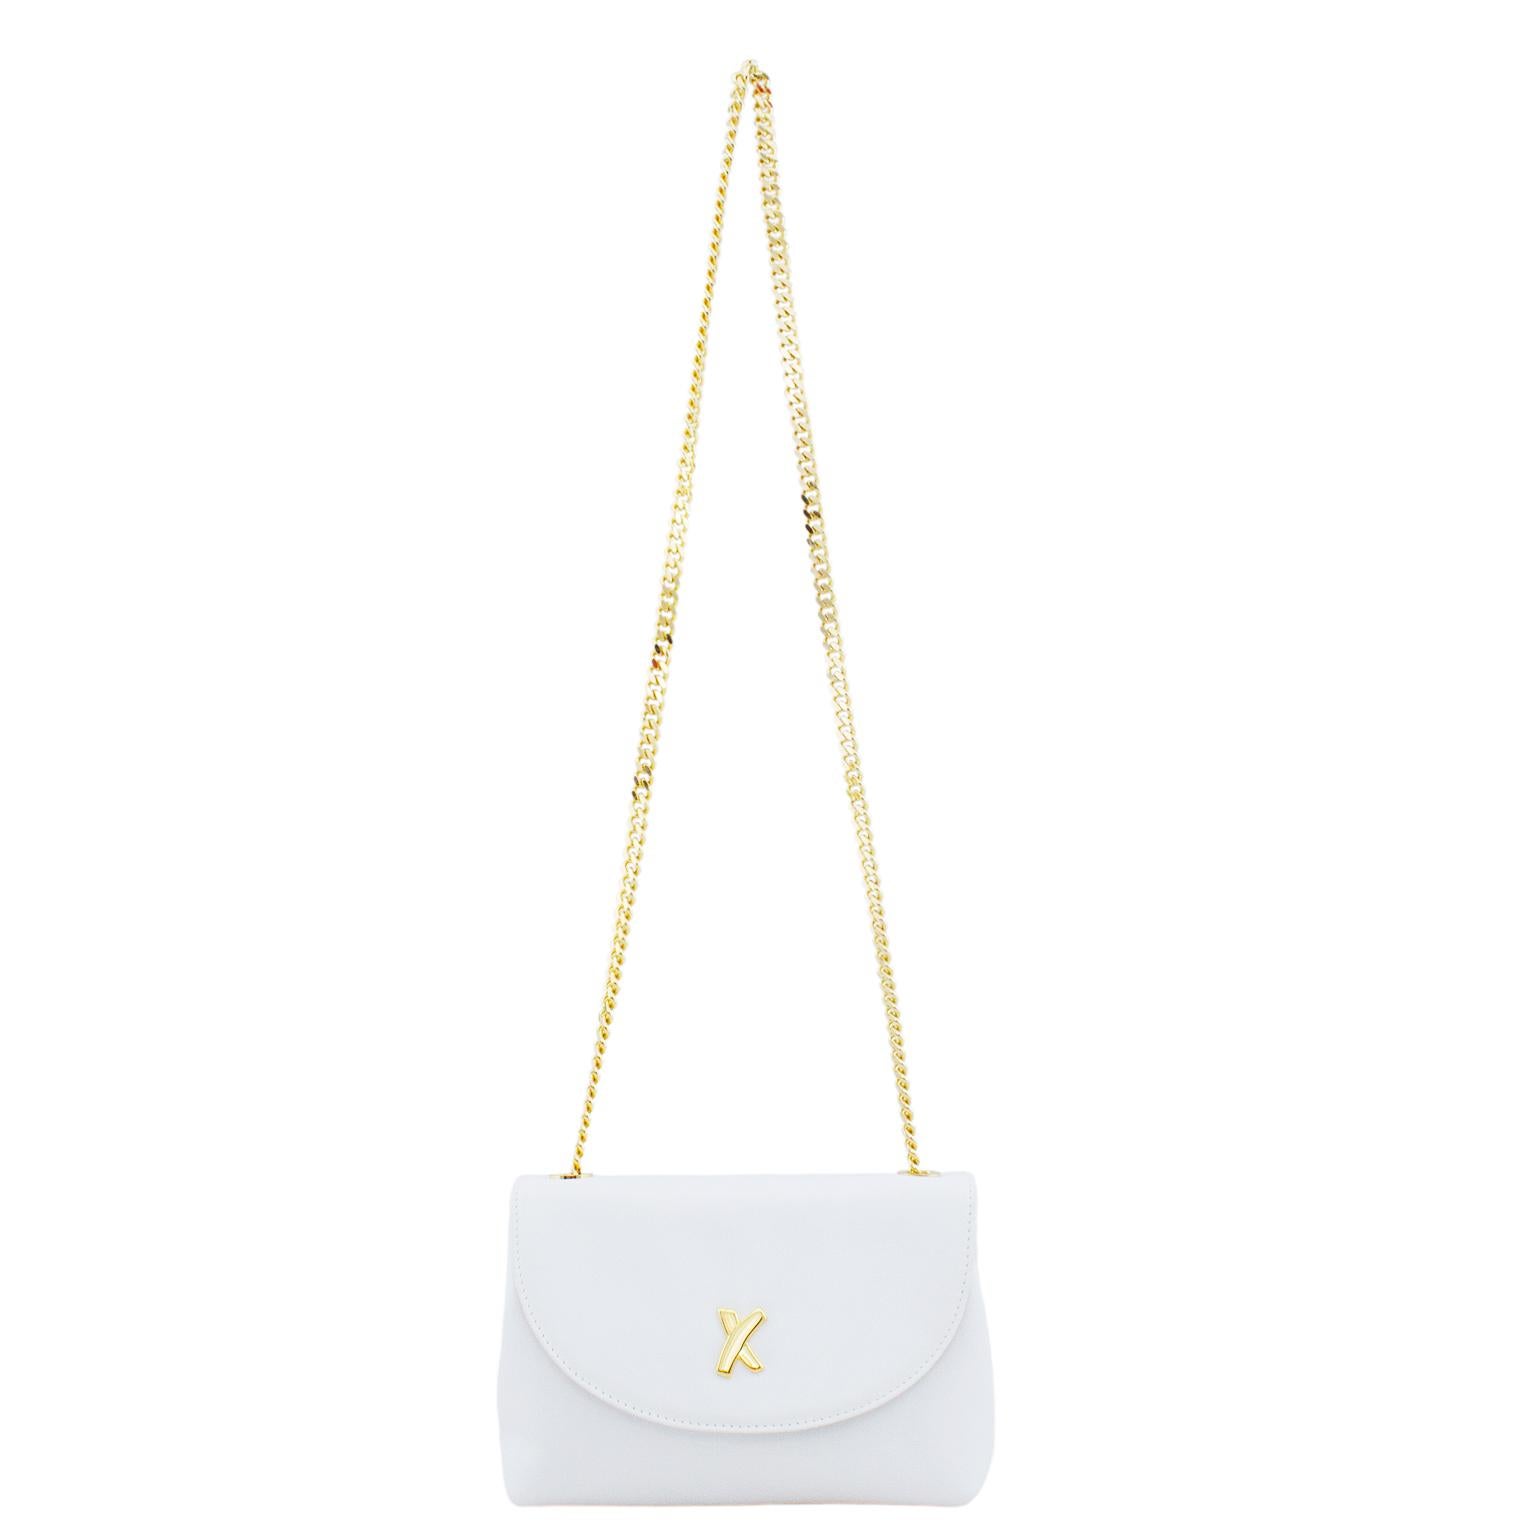 Petit sac en cuir blanc Paloma Piccaso des années 1980. La quincaillerie dorée et la chaîne très importante de 21 pouces pour l'épaule et le corps contrastent brillamment avec le cuir blanc. logo 'X' sur le devant. Rabat en forme de demi-lune qui se